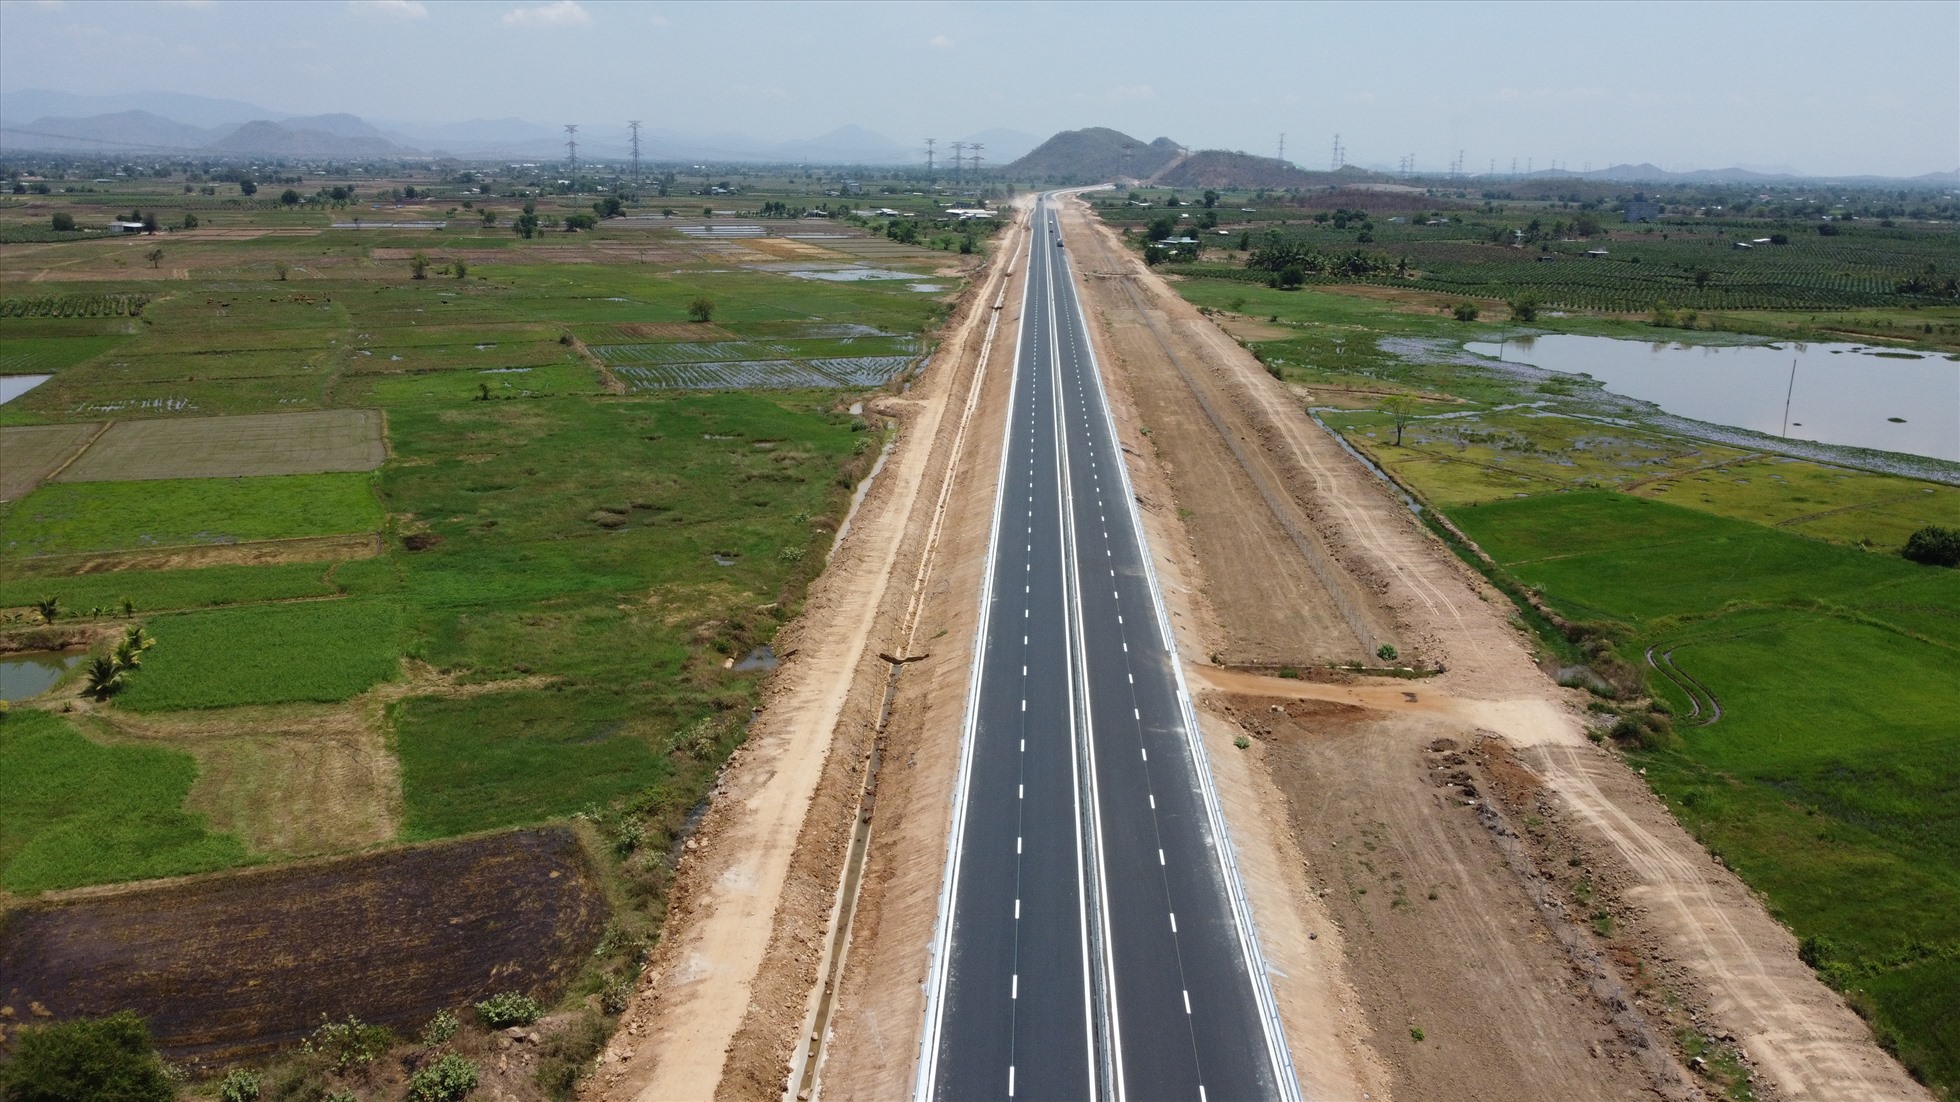 Cao tốc Vĩnh Hảo-Phan Thiết có chiều dài 100,8 km với 4 gói thầu. Điểm cuối trùng điểm đầu đoạn cao tốc Phan Thiết - Dầu Giây.